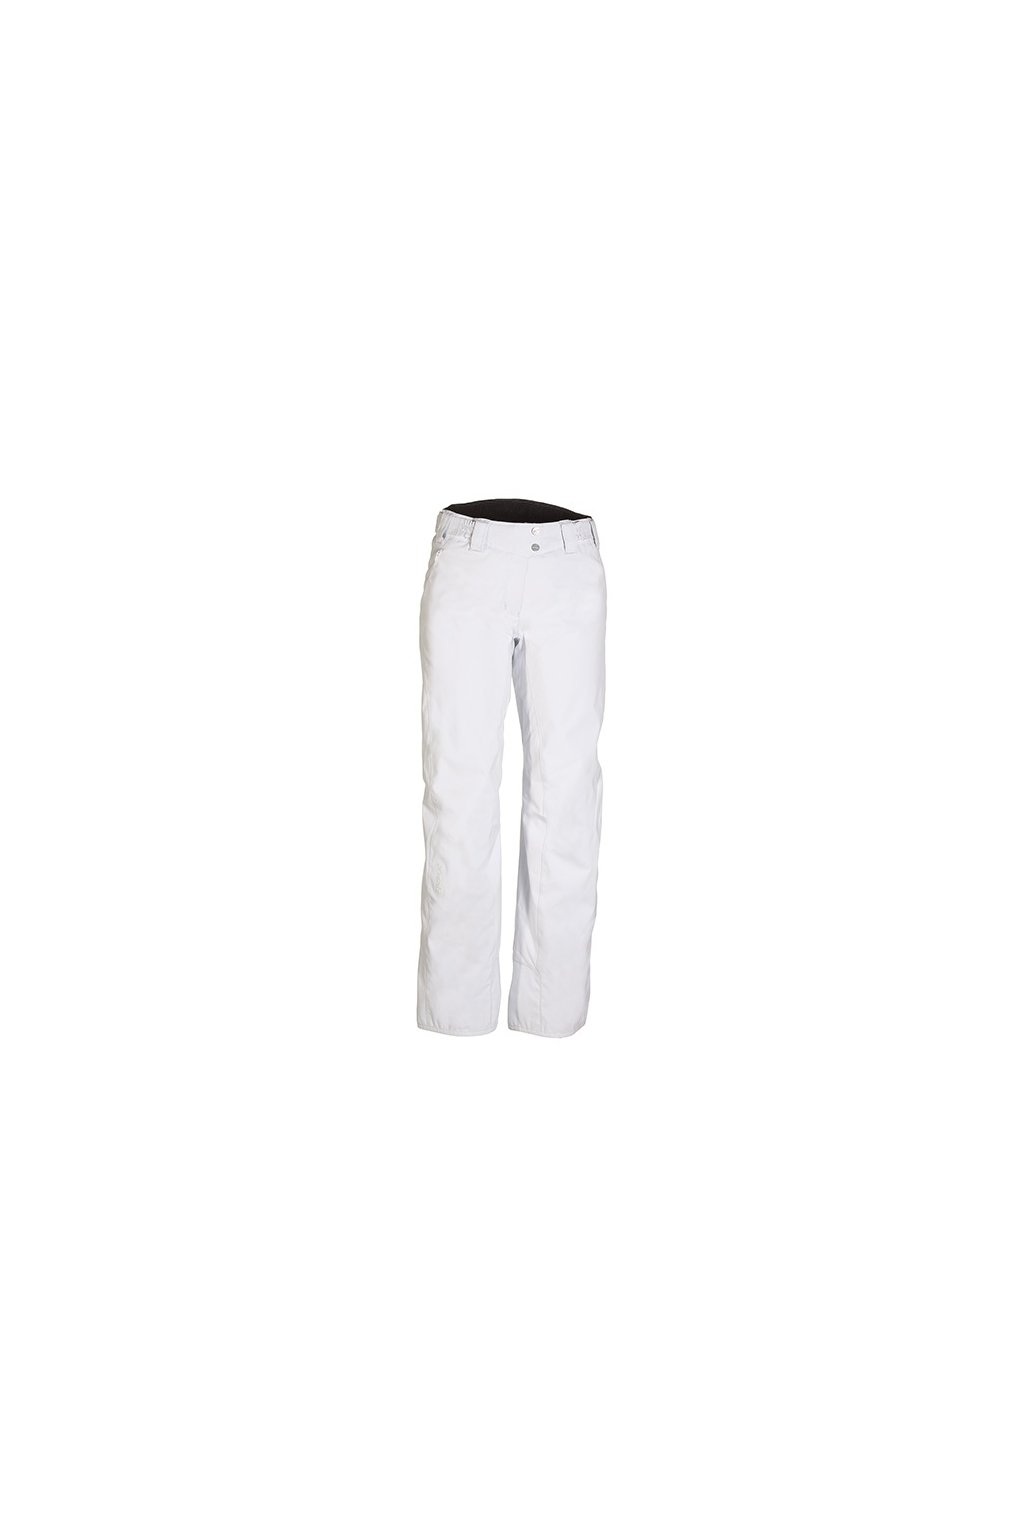 PHENIX - nohavice OT Diamond Dust Waist Pants white (Velikost 36)